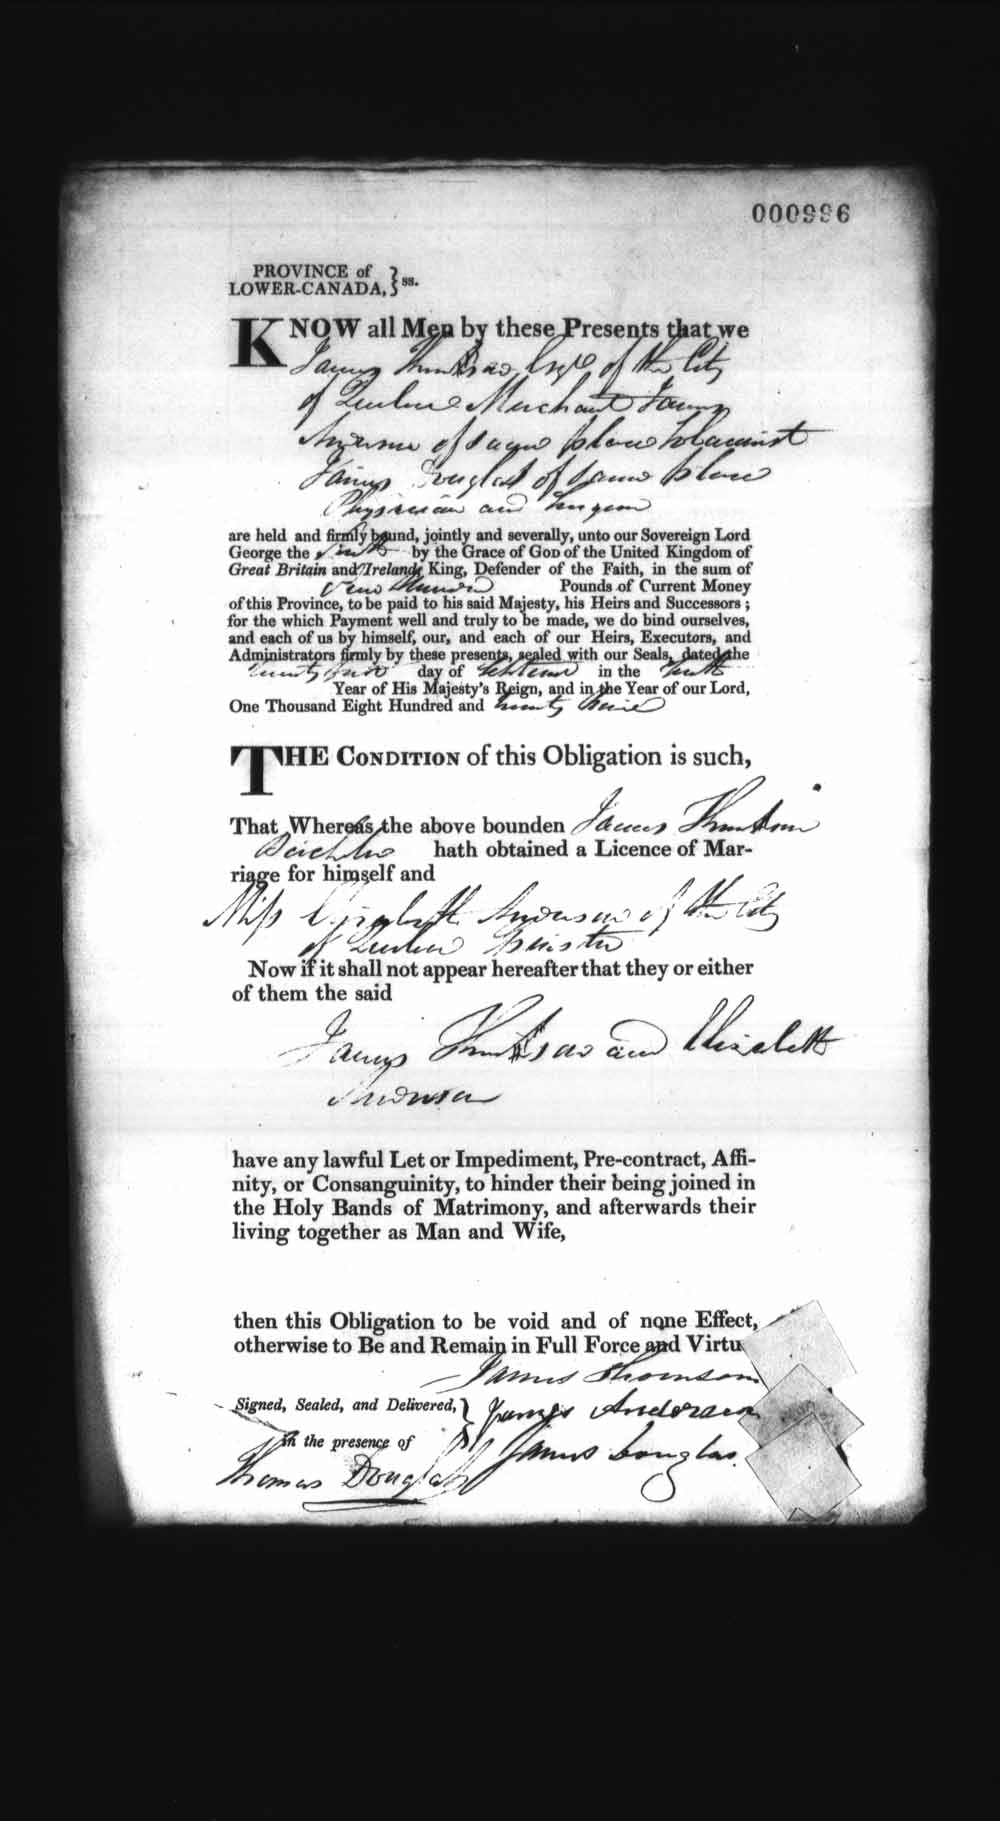 Page numérisé de Cautionnements de mariages pour le Haut-Canada et le Bas-Canada (1779-1865) pour l'image numéro: e008237112